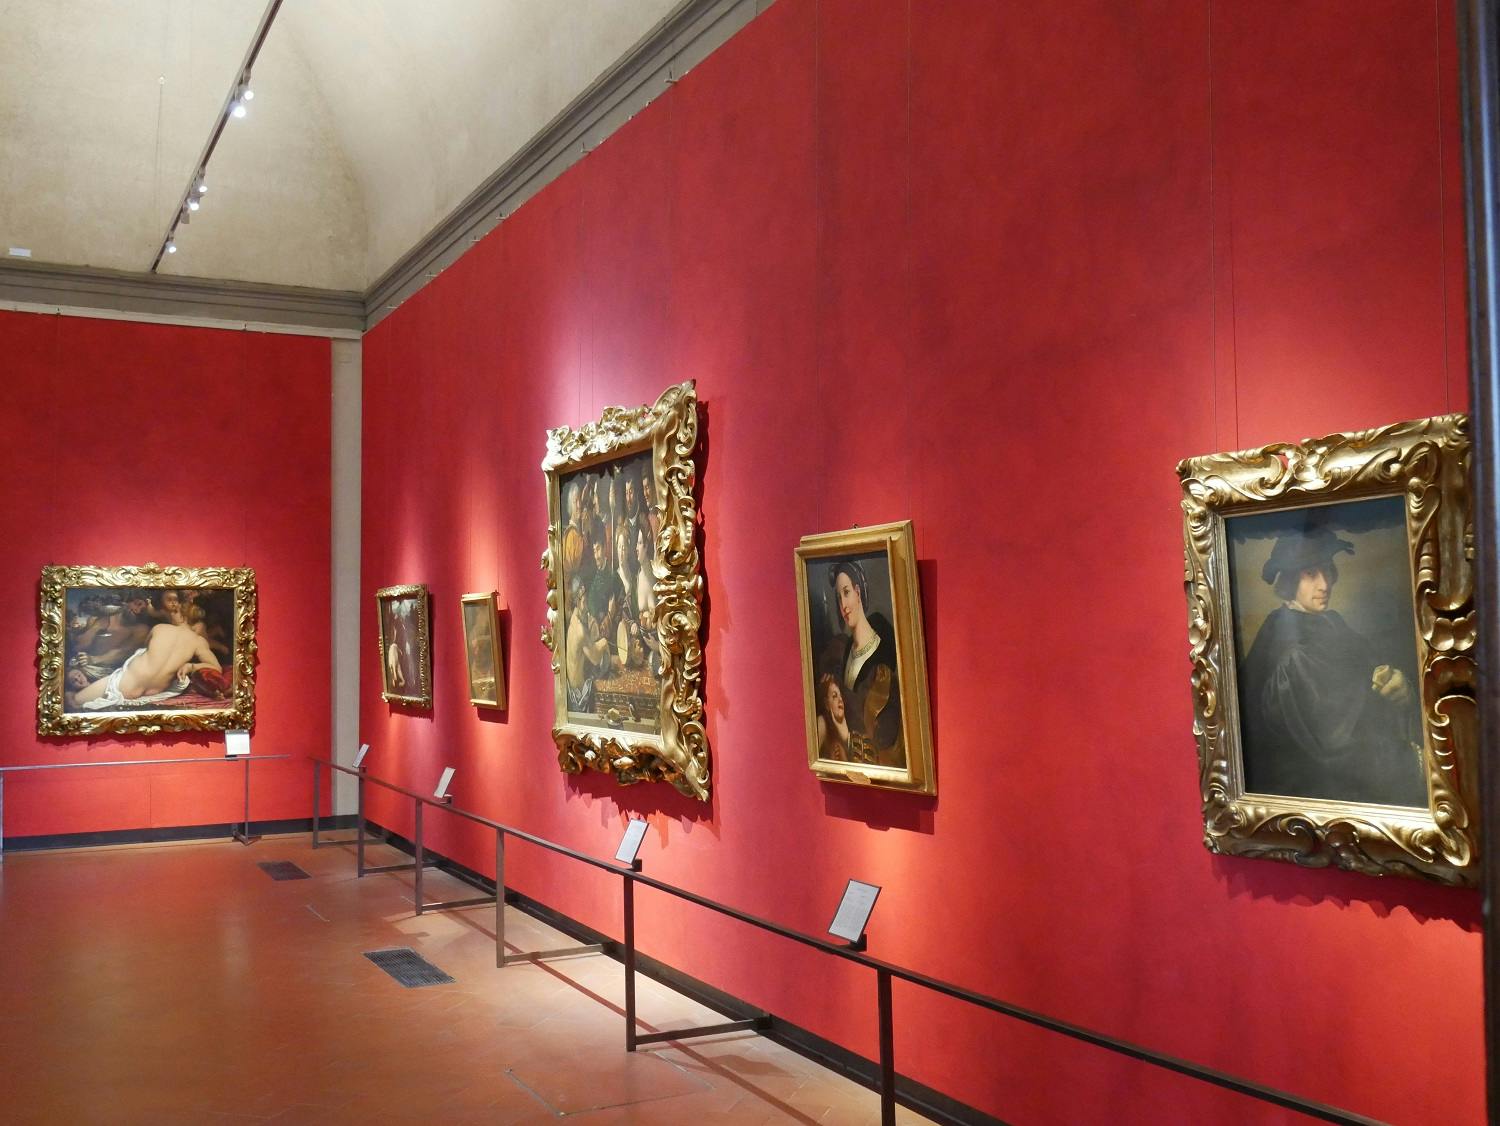 Caravaggio and the 17th century